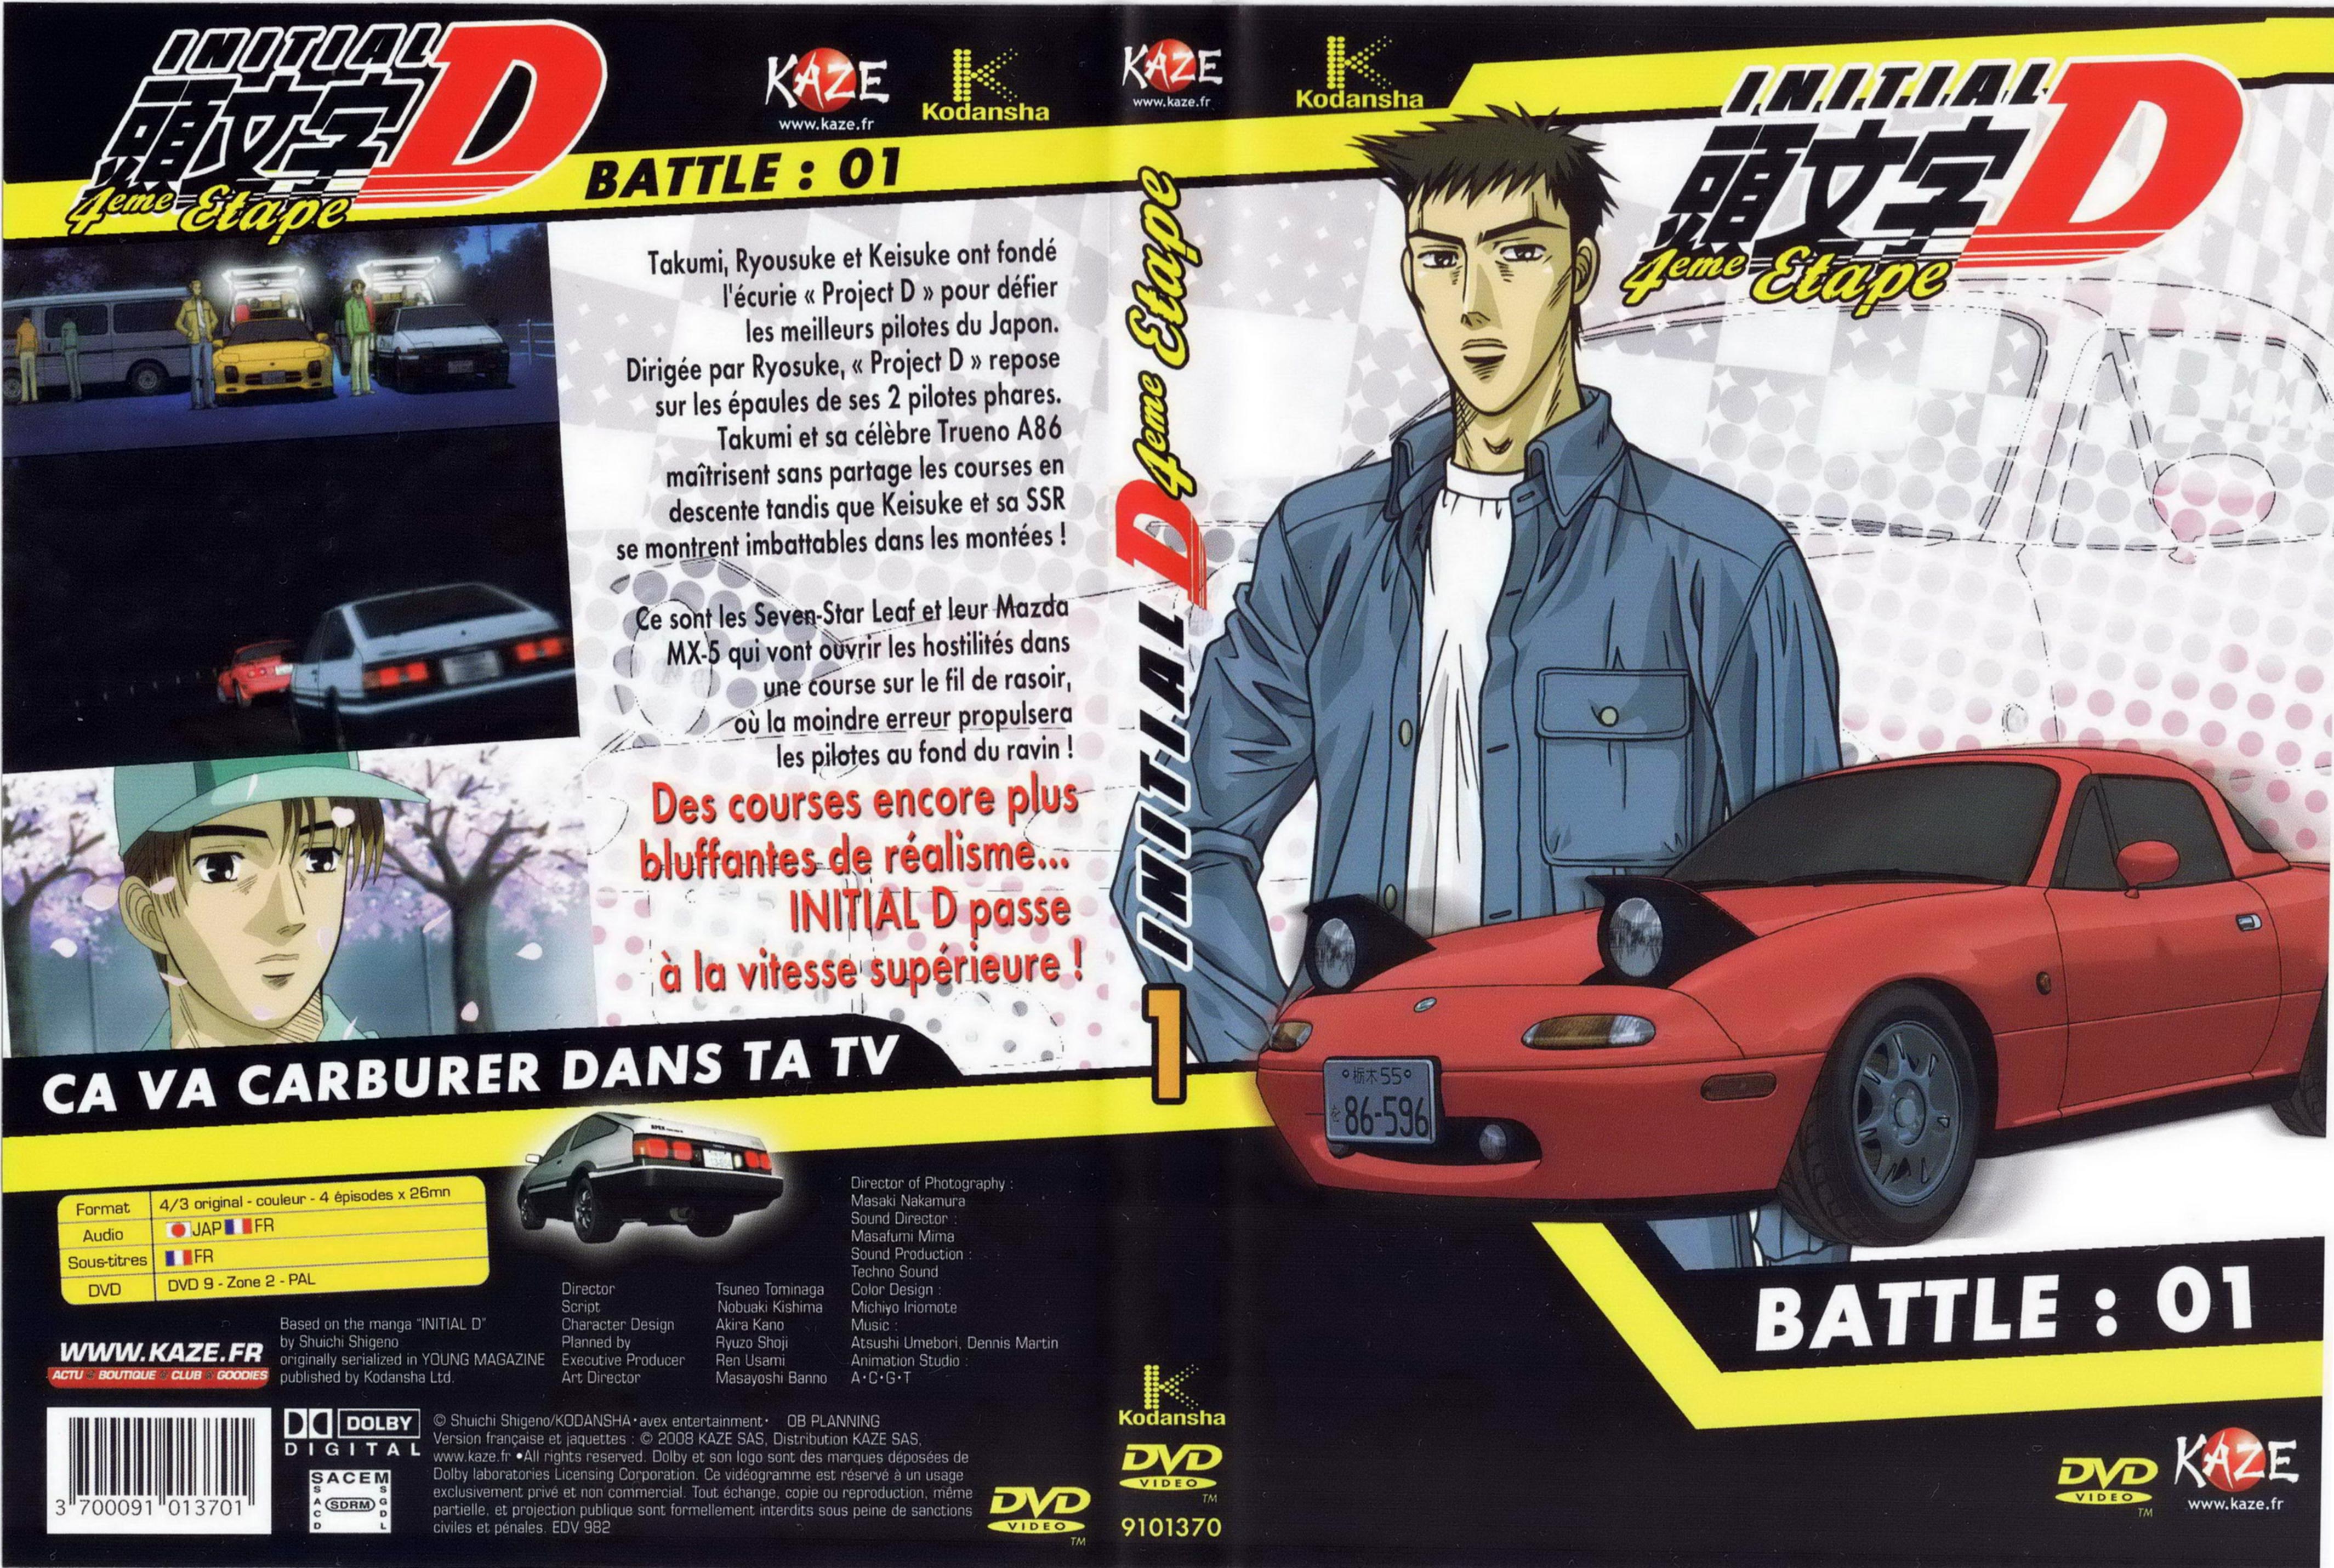 Jaquette DVD Initial D 4 me tape battle 01